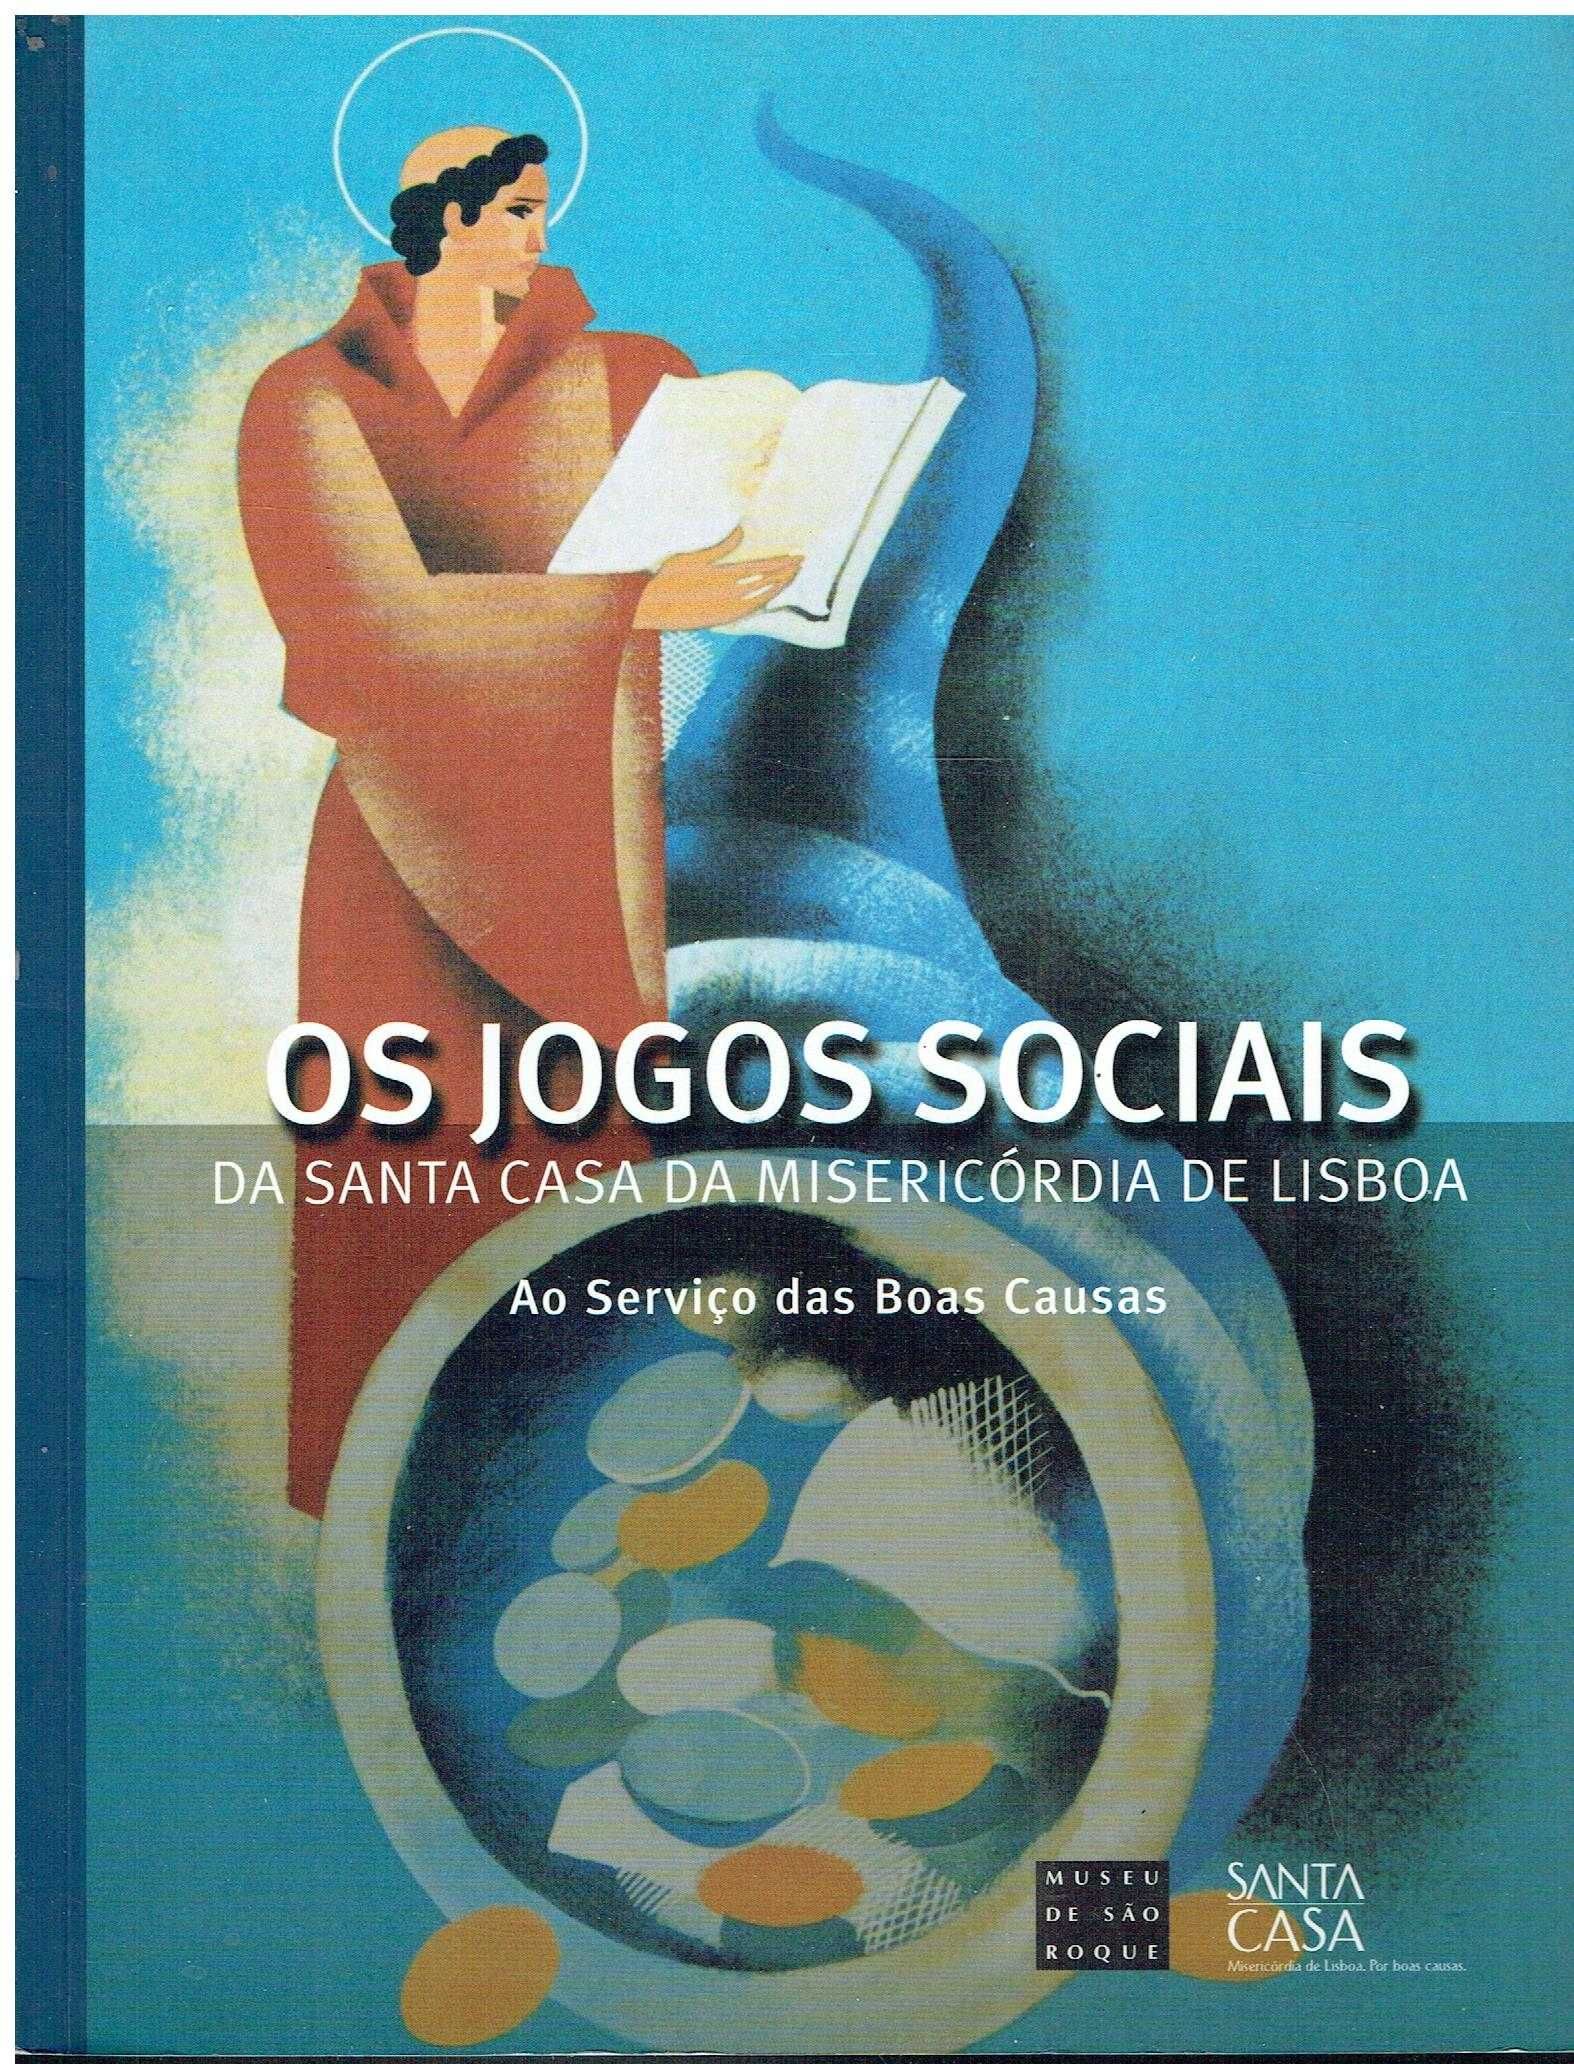 11688

Os Jogos Sociais da Santa Casa da Misericórdia de Lisboa